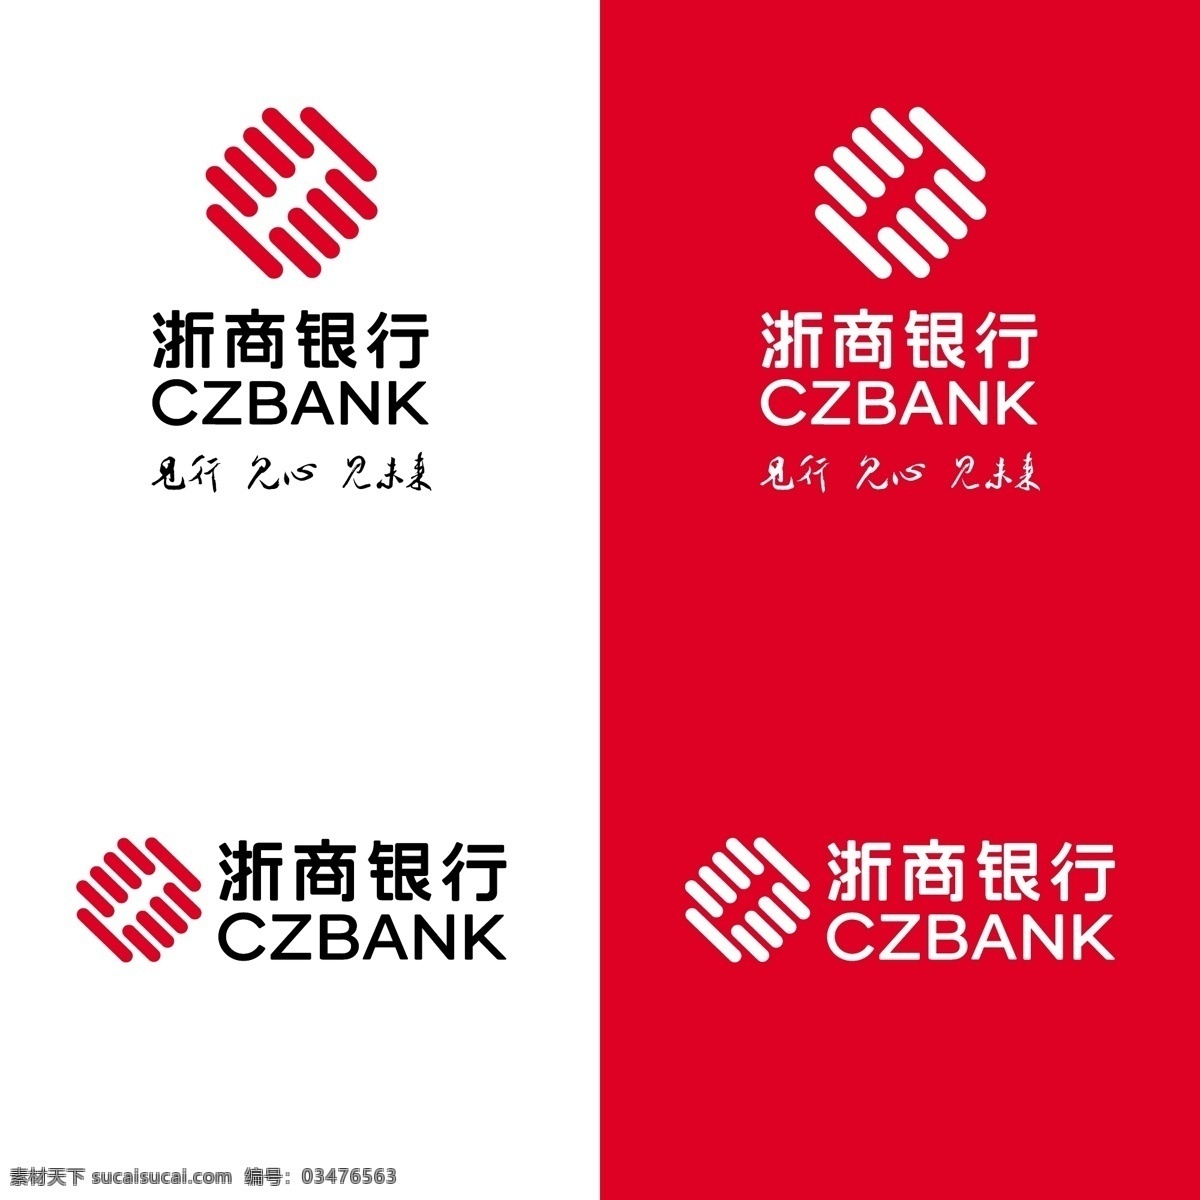 浙商银行 logo图片 浙商 银行 品牌 logo 标志 商标 vi 标志图标 企业